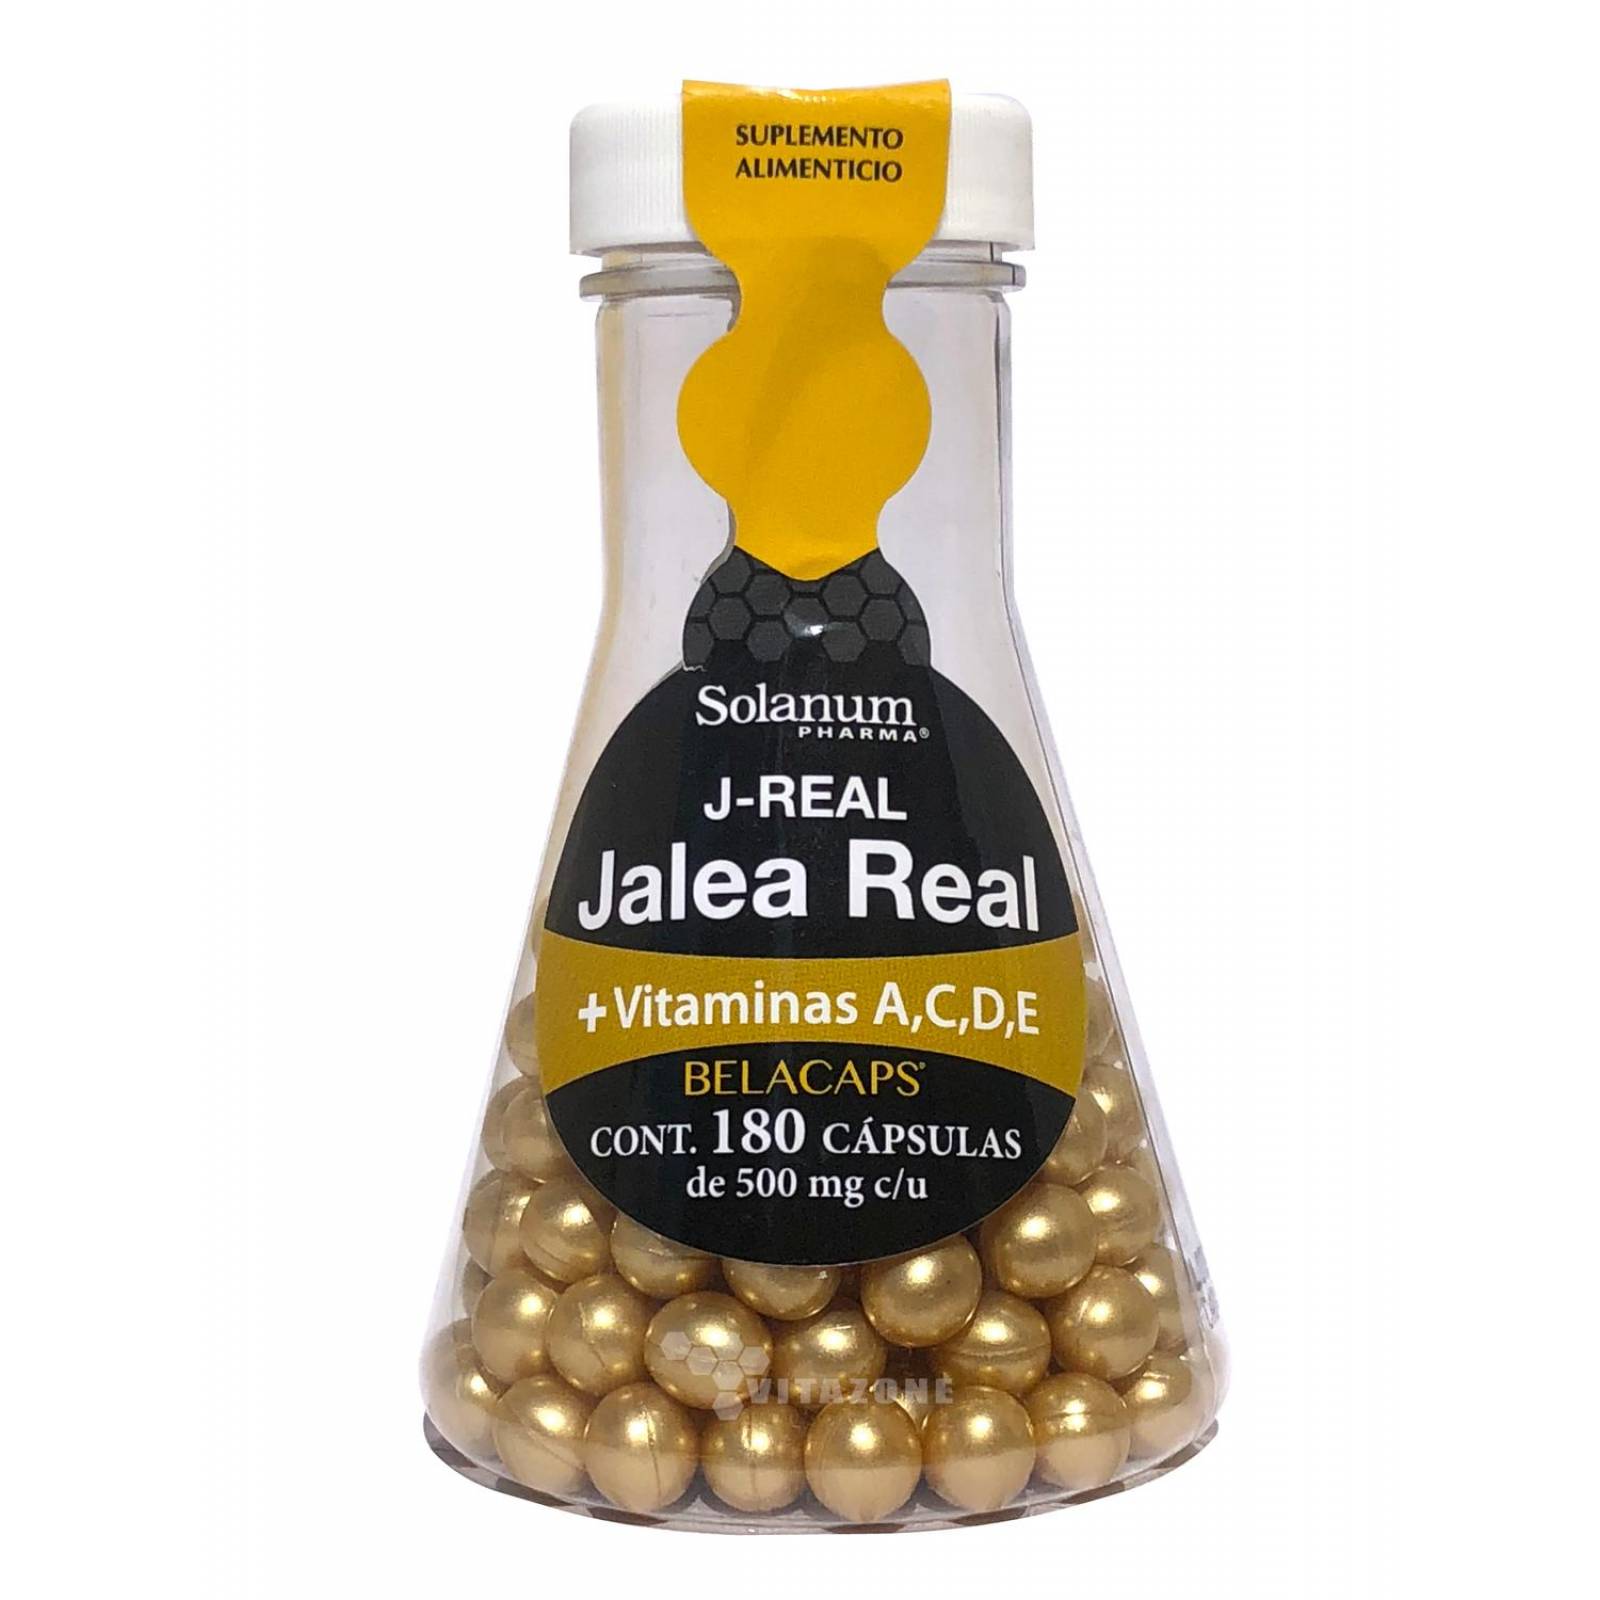 Jalea Real Vitamina A,C,D, E Solanum 180 Caps Solanum 